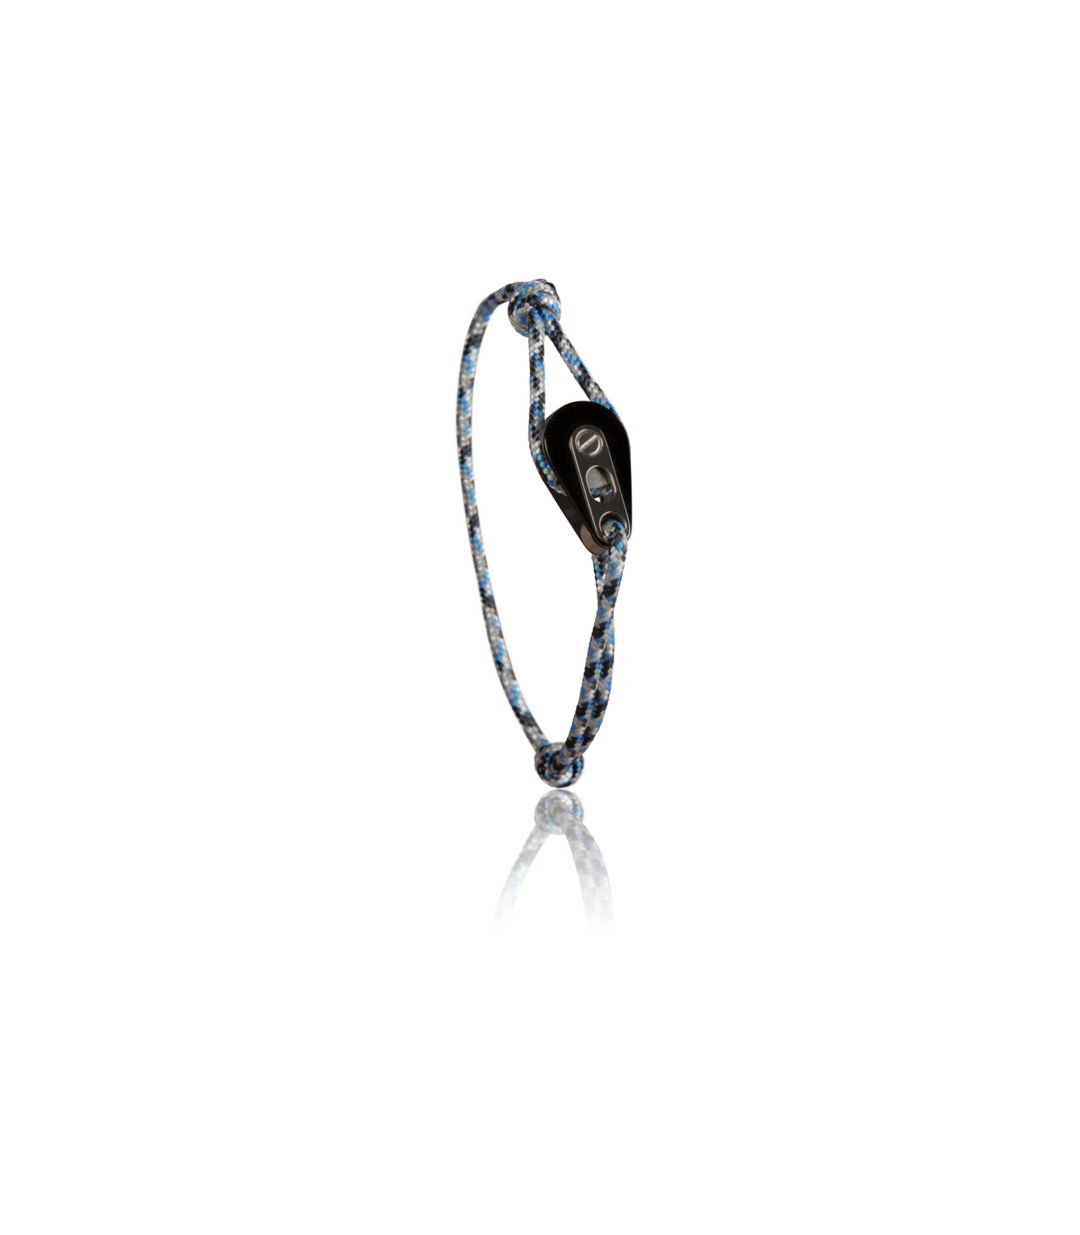 Bracelet Poulie PVD Noir / Acier, Camo Cordon Bleu -  - Latitude 46 - Bracelet - Les Champs d'Or